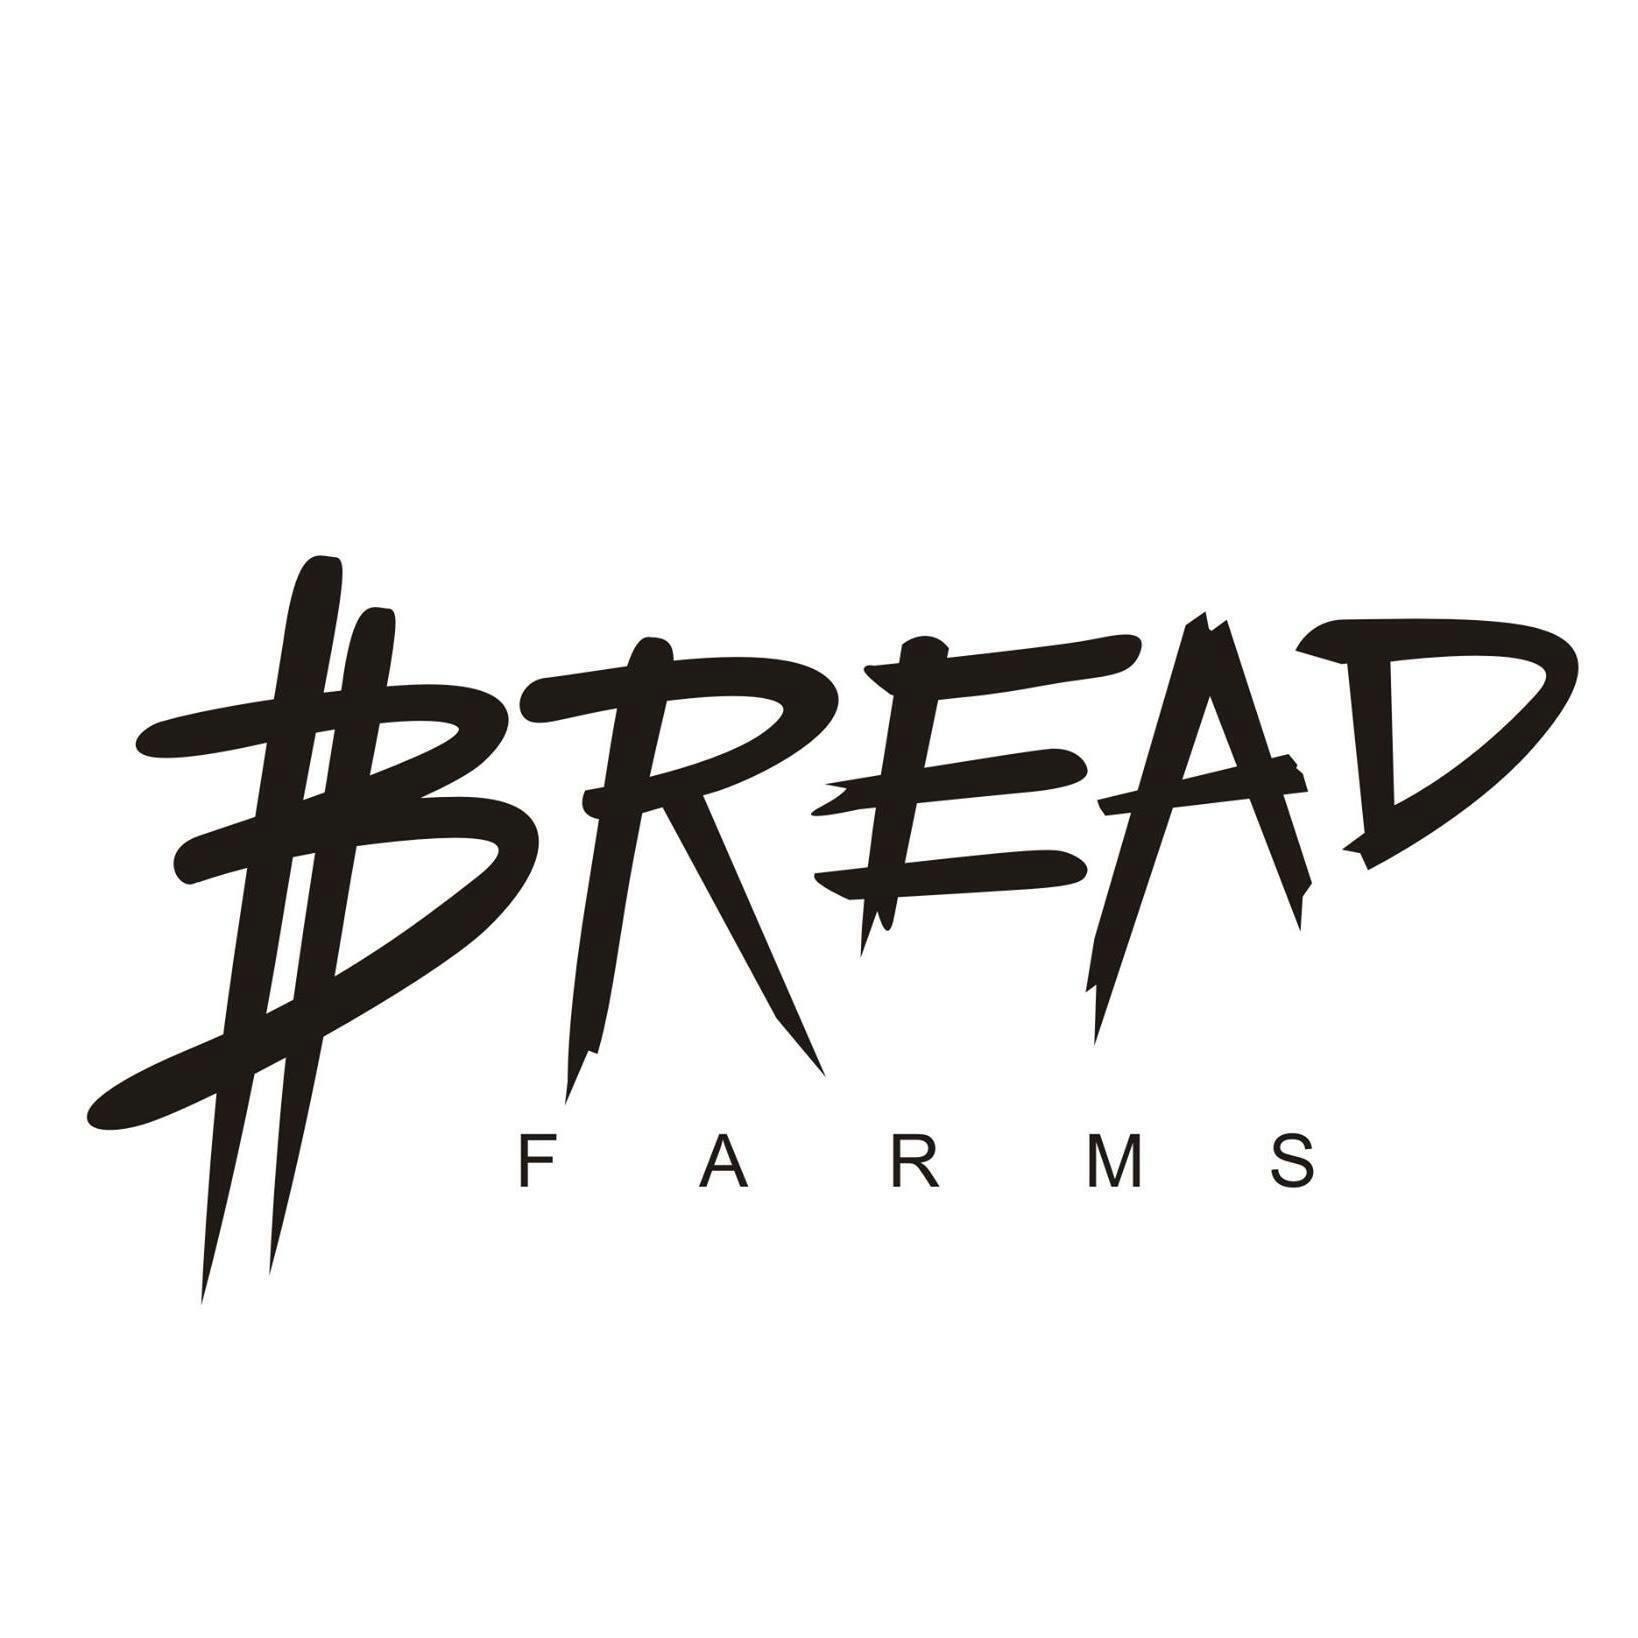 Bread Farms logo